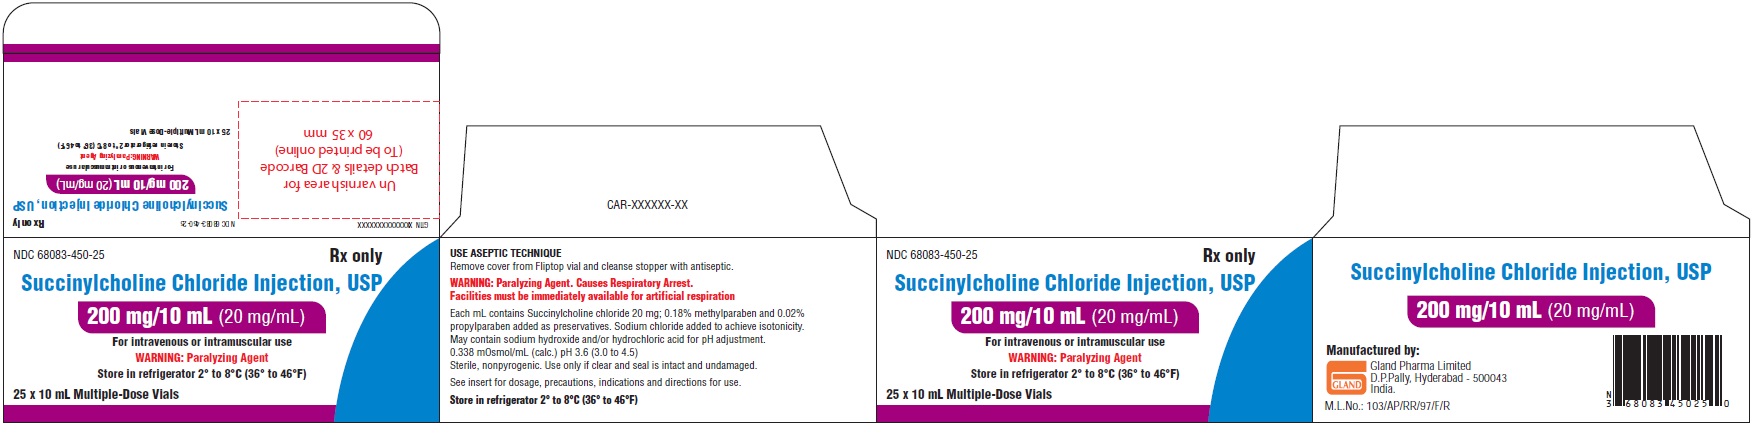 succinylcholine-chloride-spl-carton-label